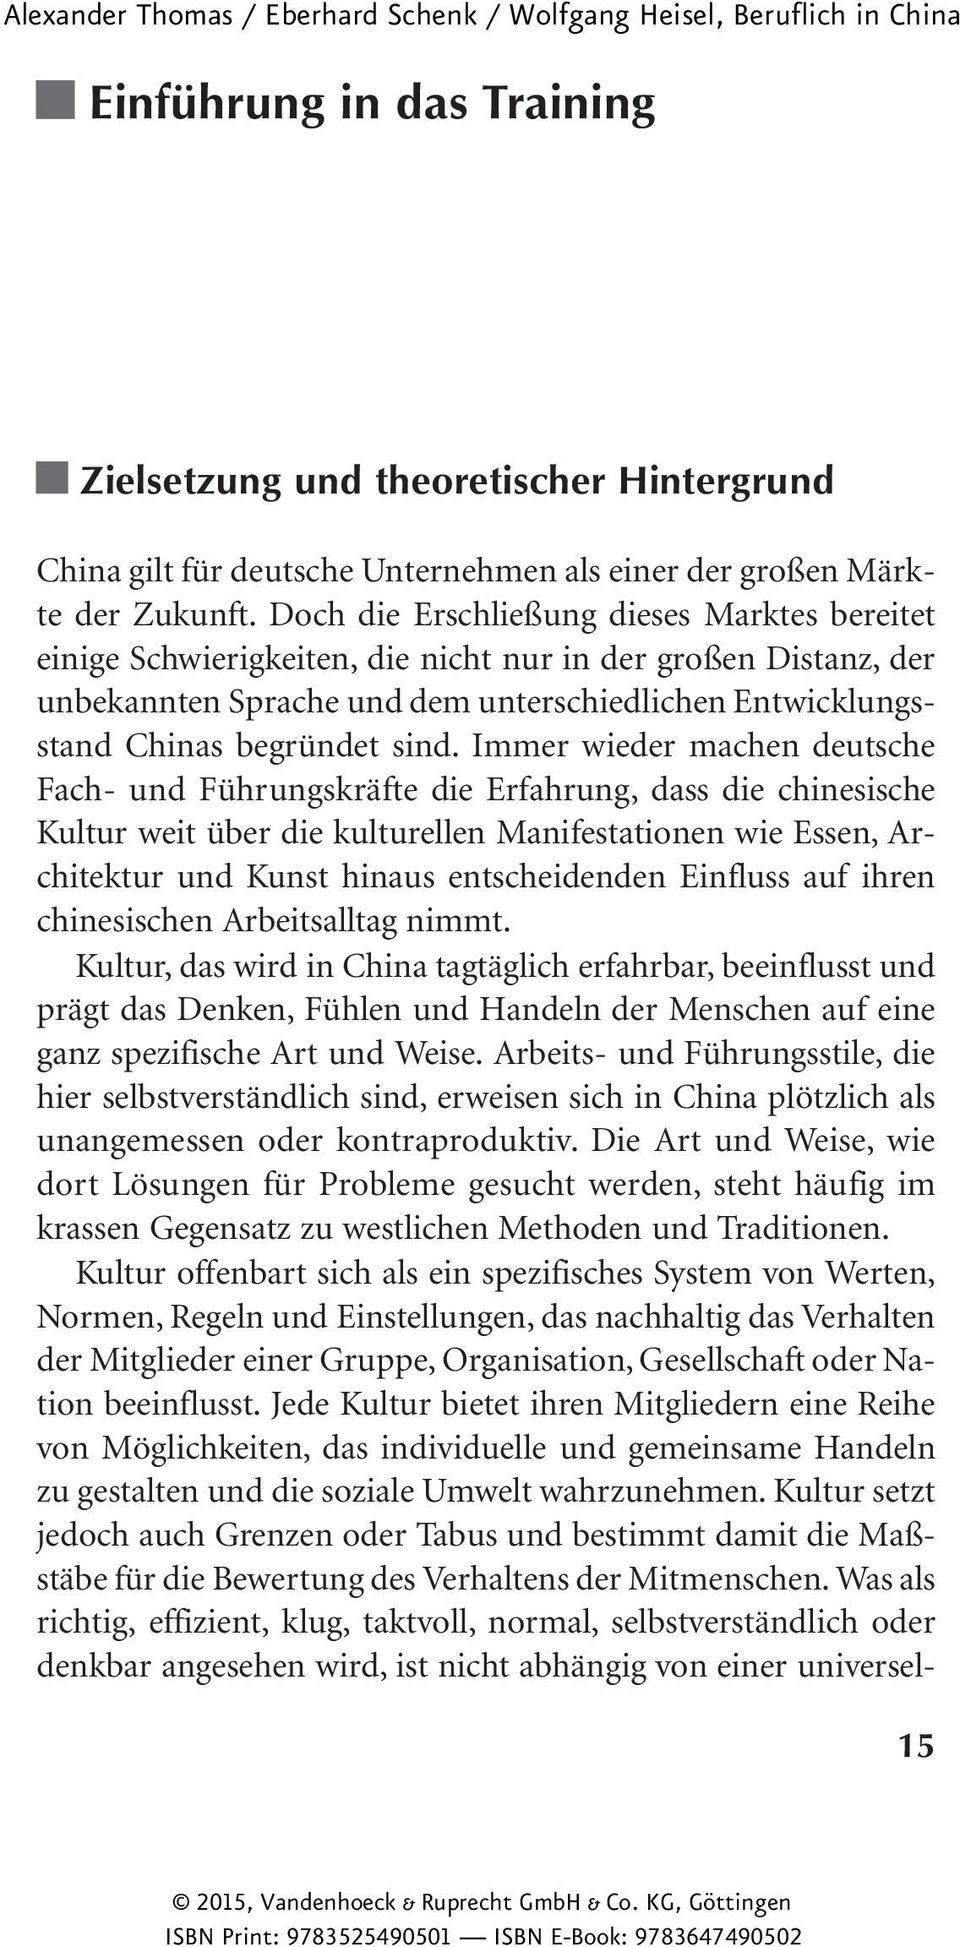 Immer wieder machen deutsche Fach- und Führungskräfte die Erfahrung, dass die chinesische Kultur weit über die kulturellen Manifestationen wie Essen, Architektur und Kunst hinaus entscheidenden